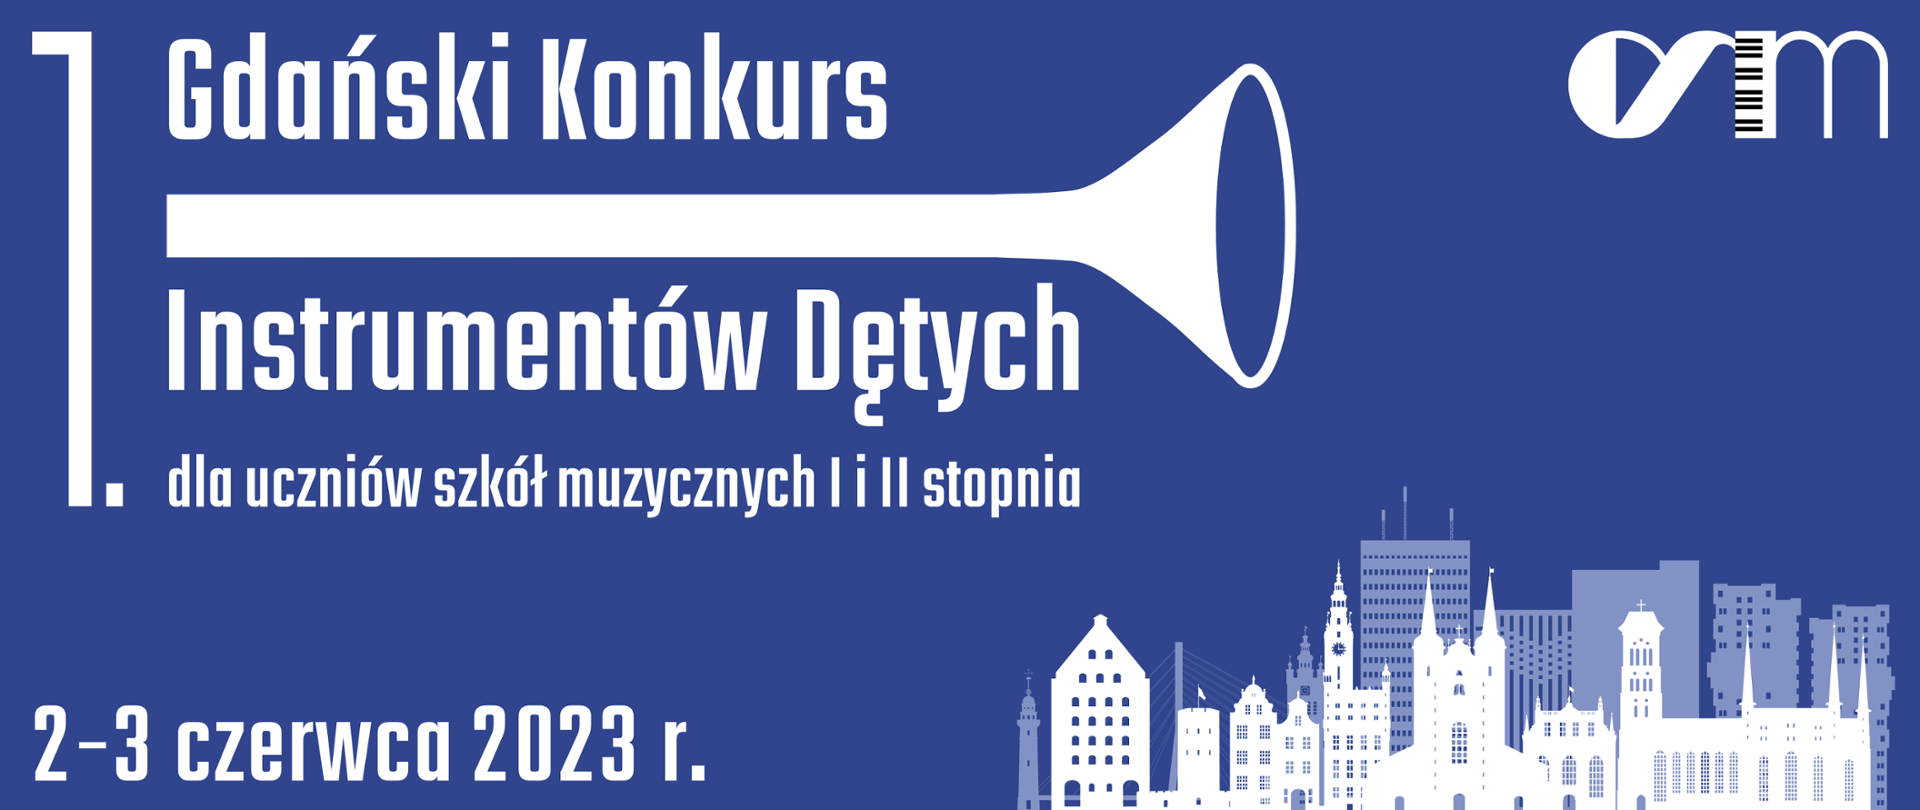 Na niebieskim tle napis białą czcionką Gdańsk Konkurs Instrumentów Dętych oraz data 2-3 czerwca 2023, w prawy rogu grafika stockowa z charakterystycznymi budynkami Gdańska, w prawym górnym rogu logo szkoły. 